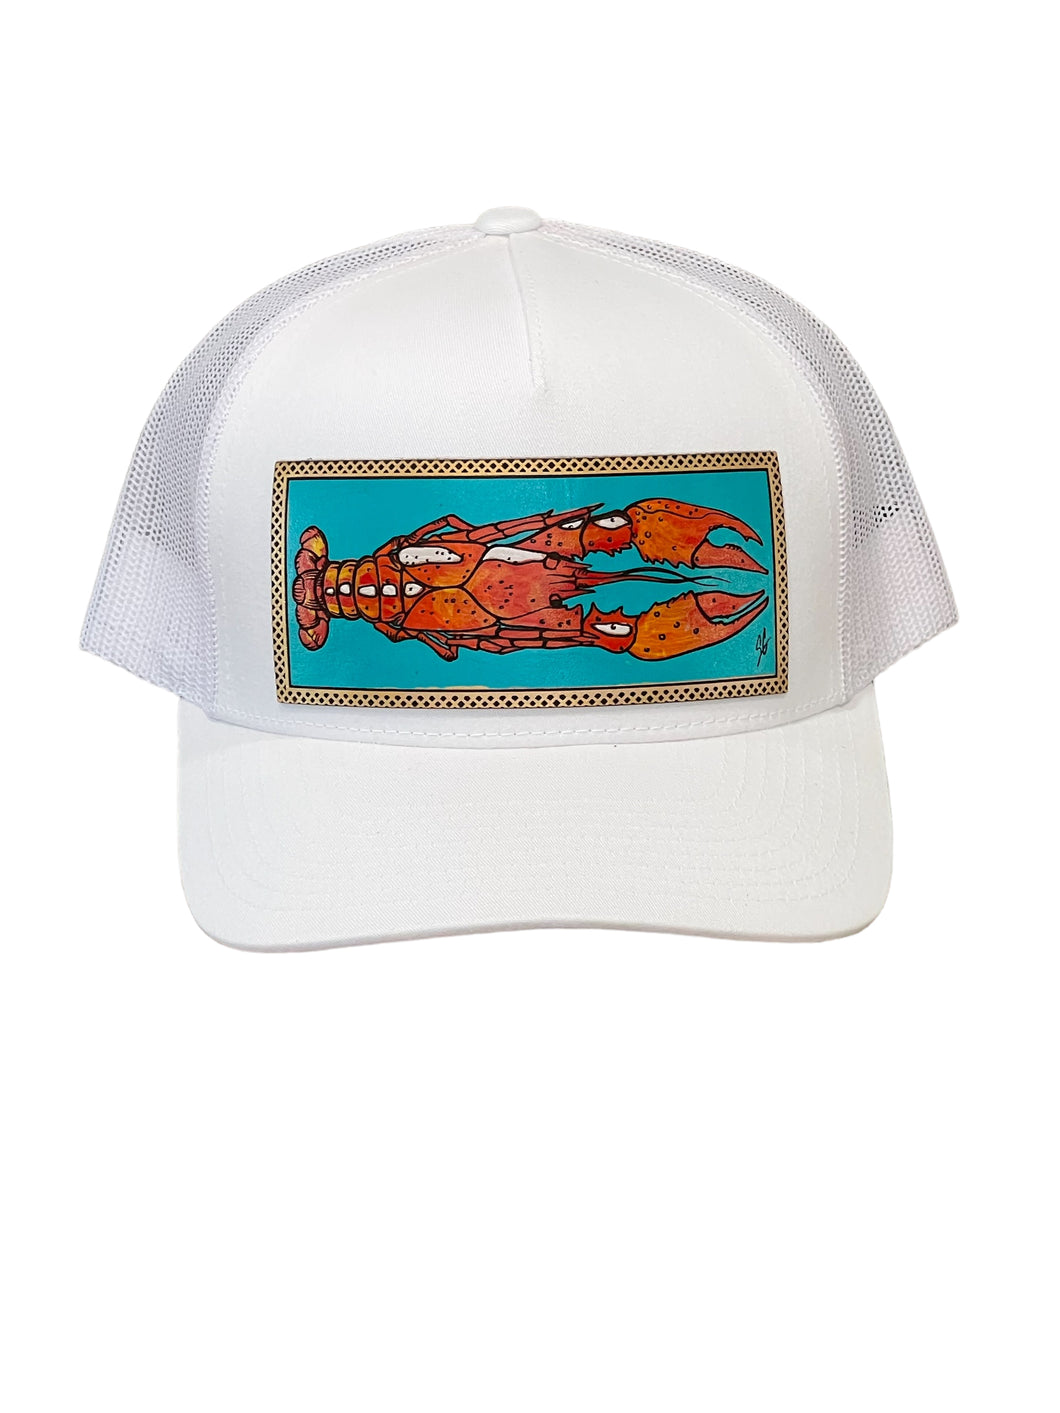 Teal Crawfish Cap